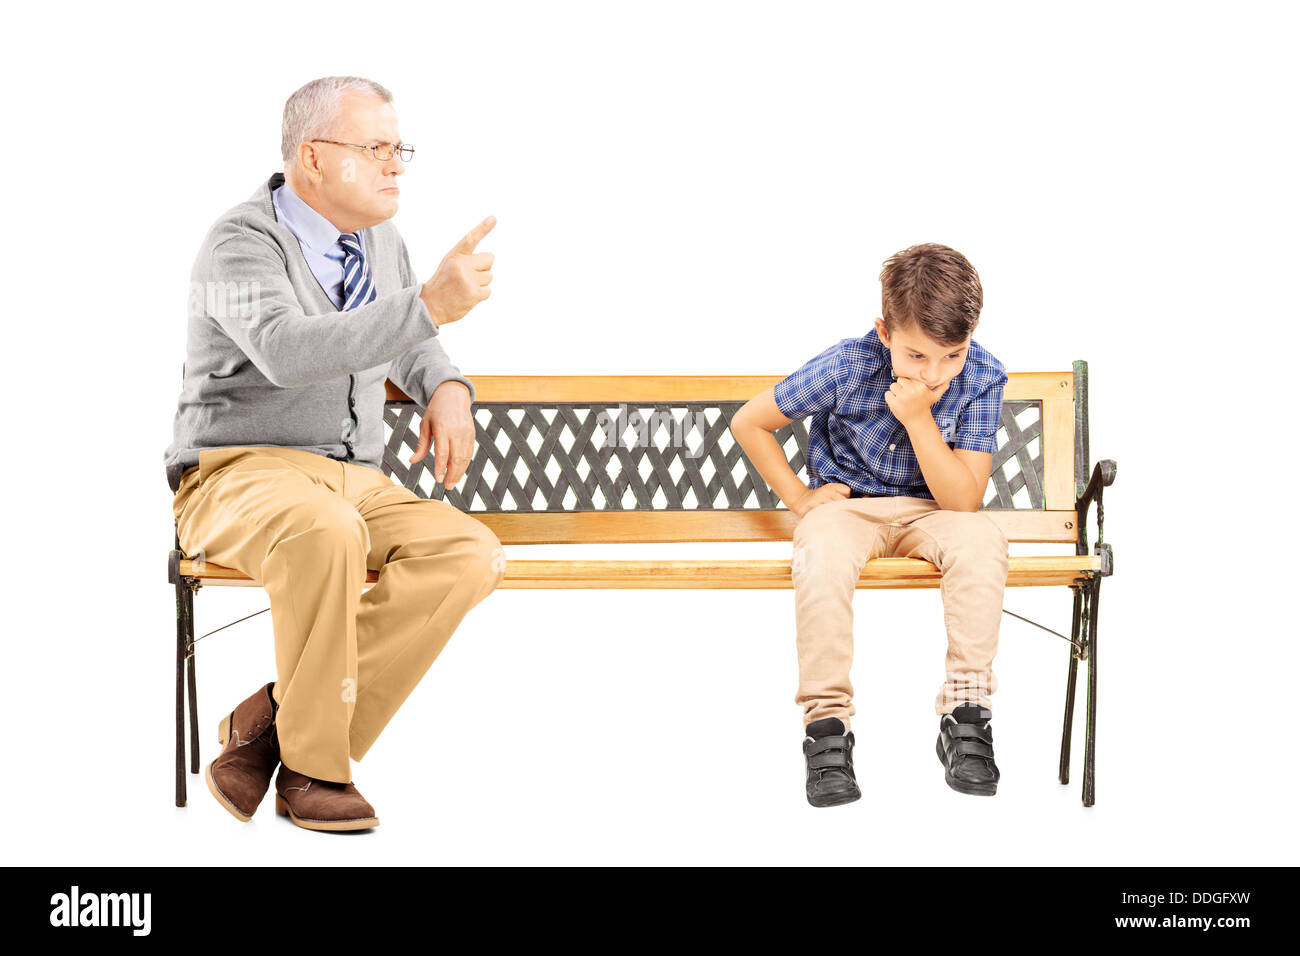 Grand-père en colère en criant à son neveu triste, assis sur un banc en bois Banque D'Images